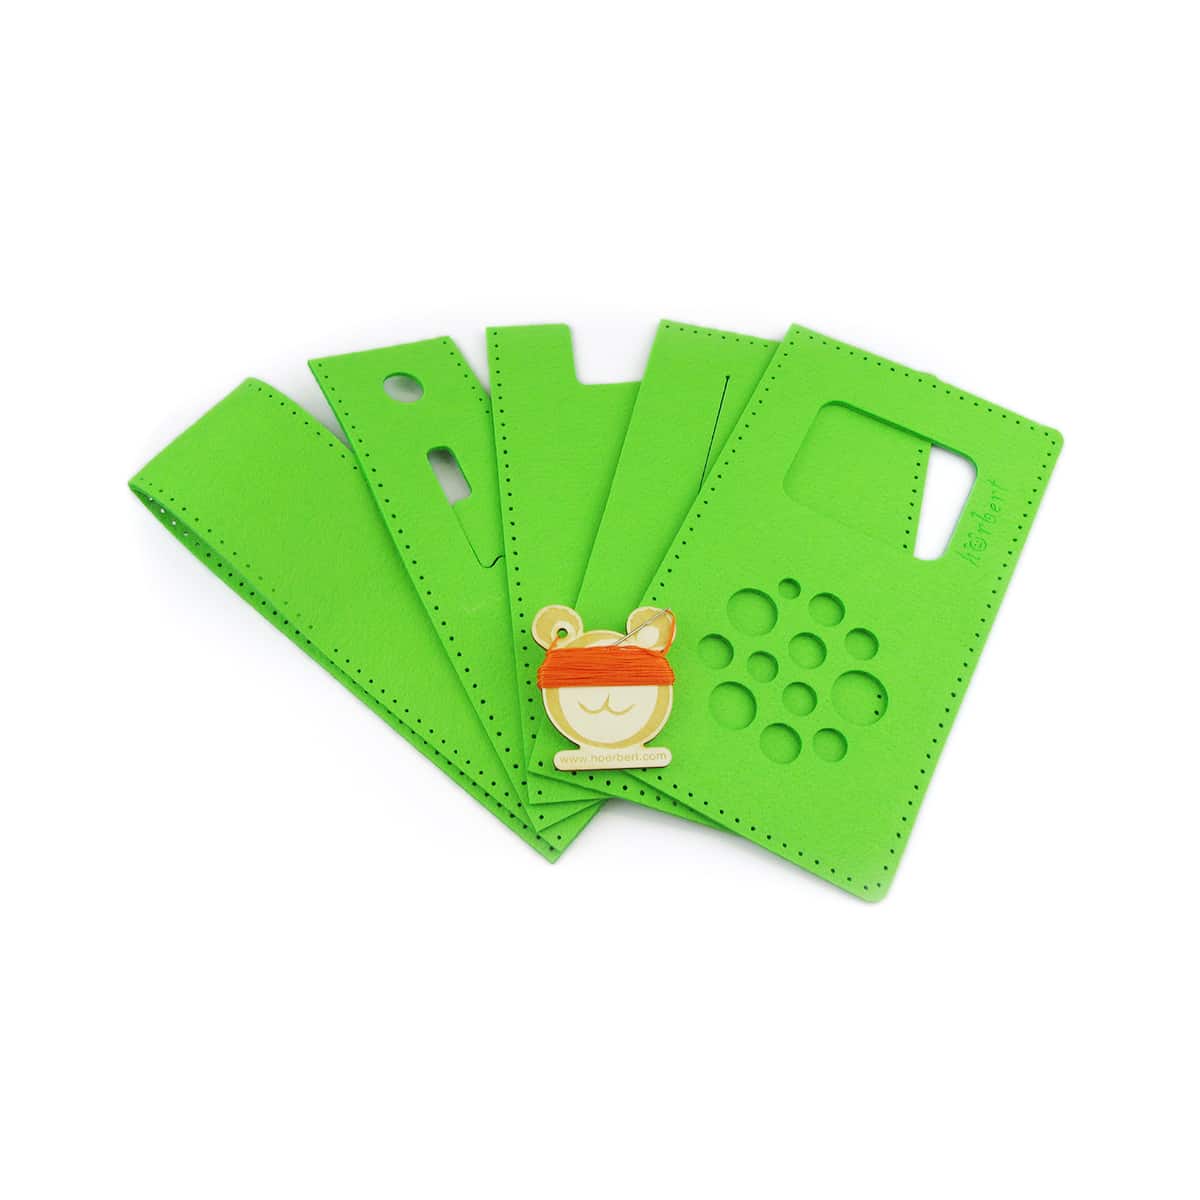 Nähset für eine grüne Filztasche für hörbert